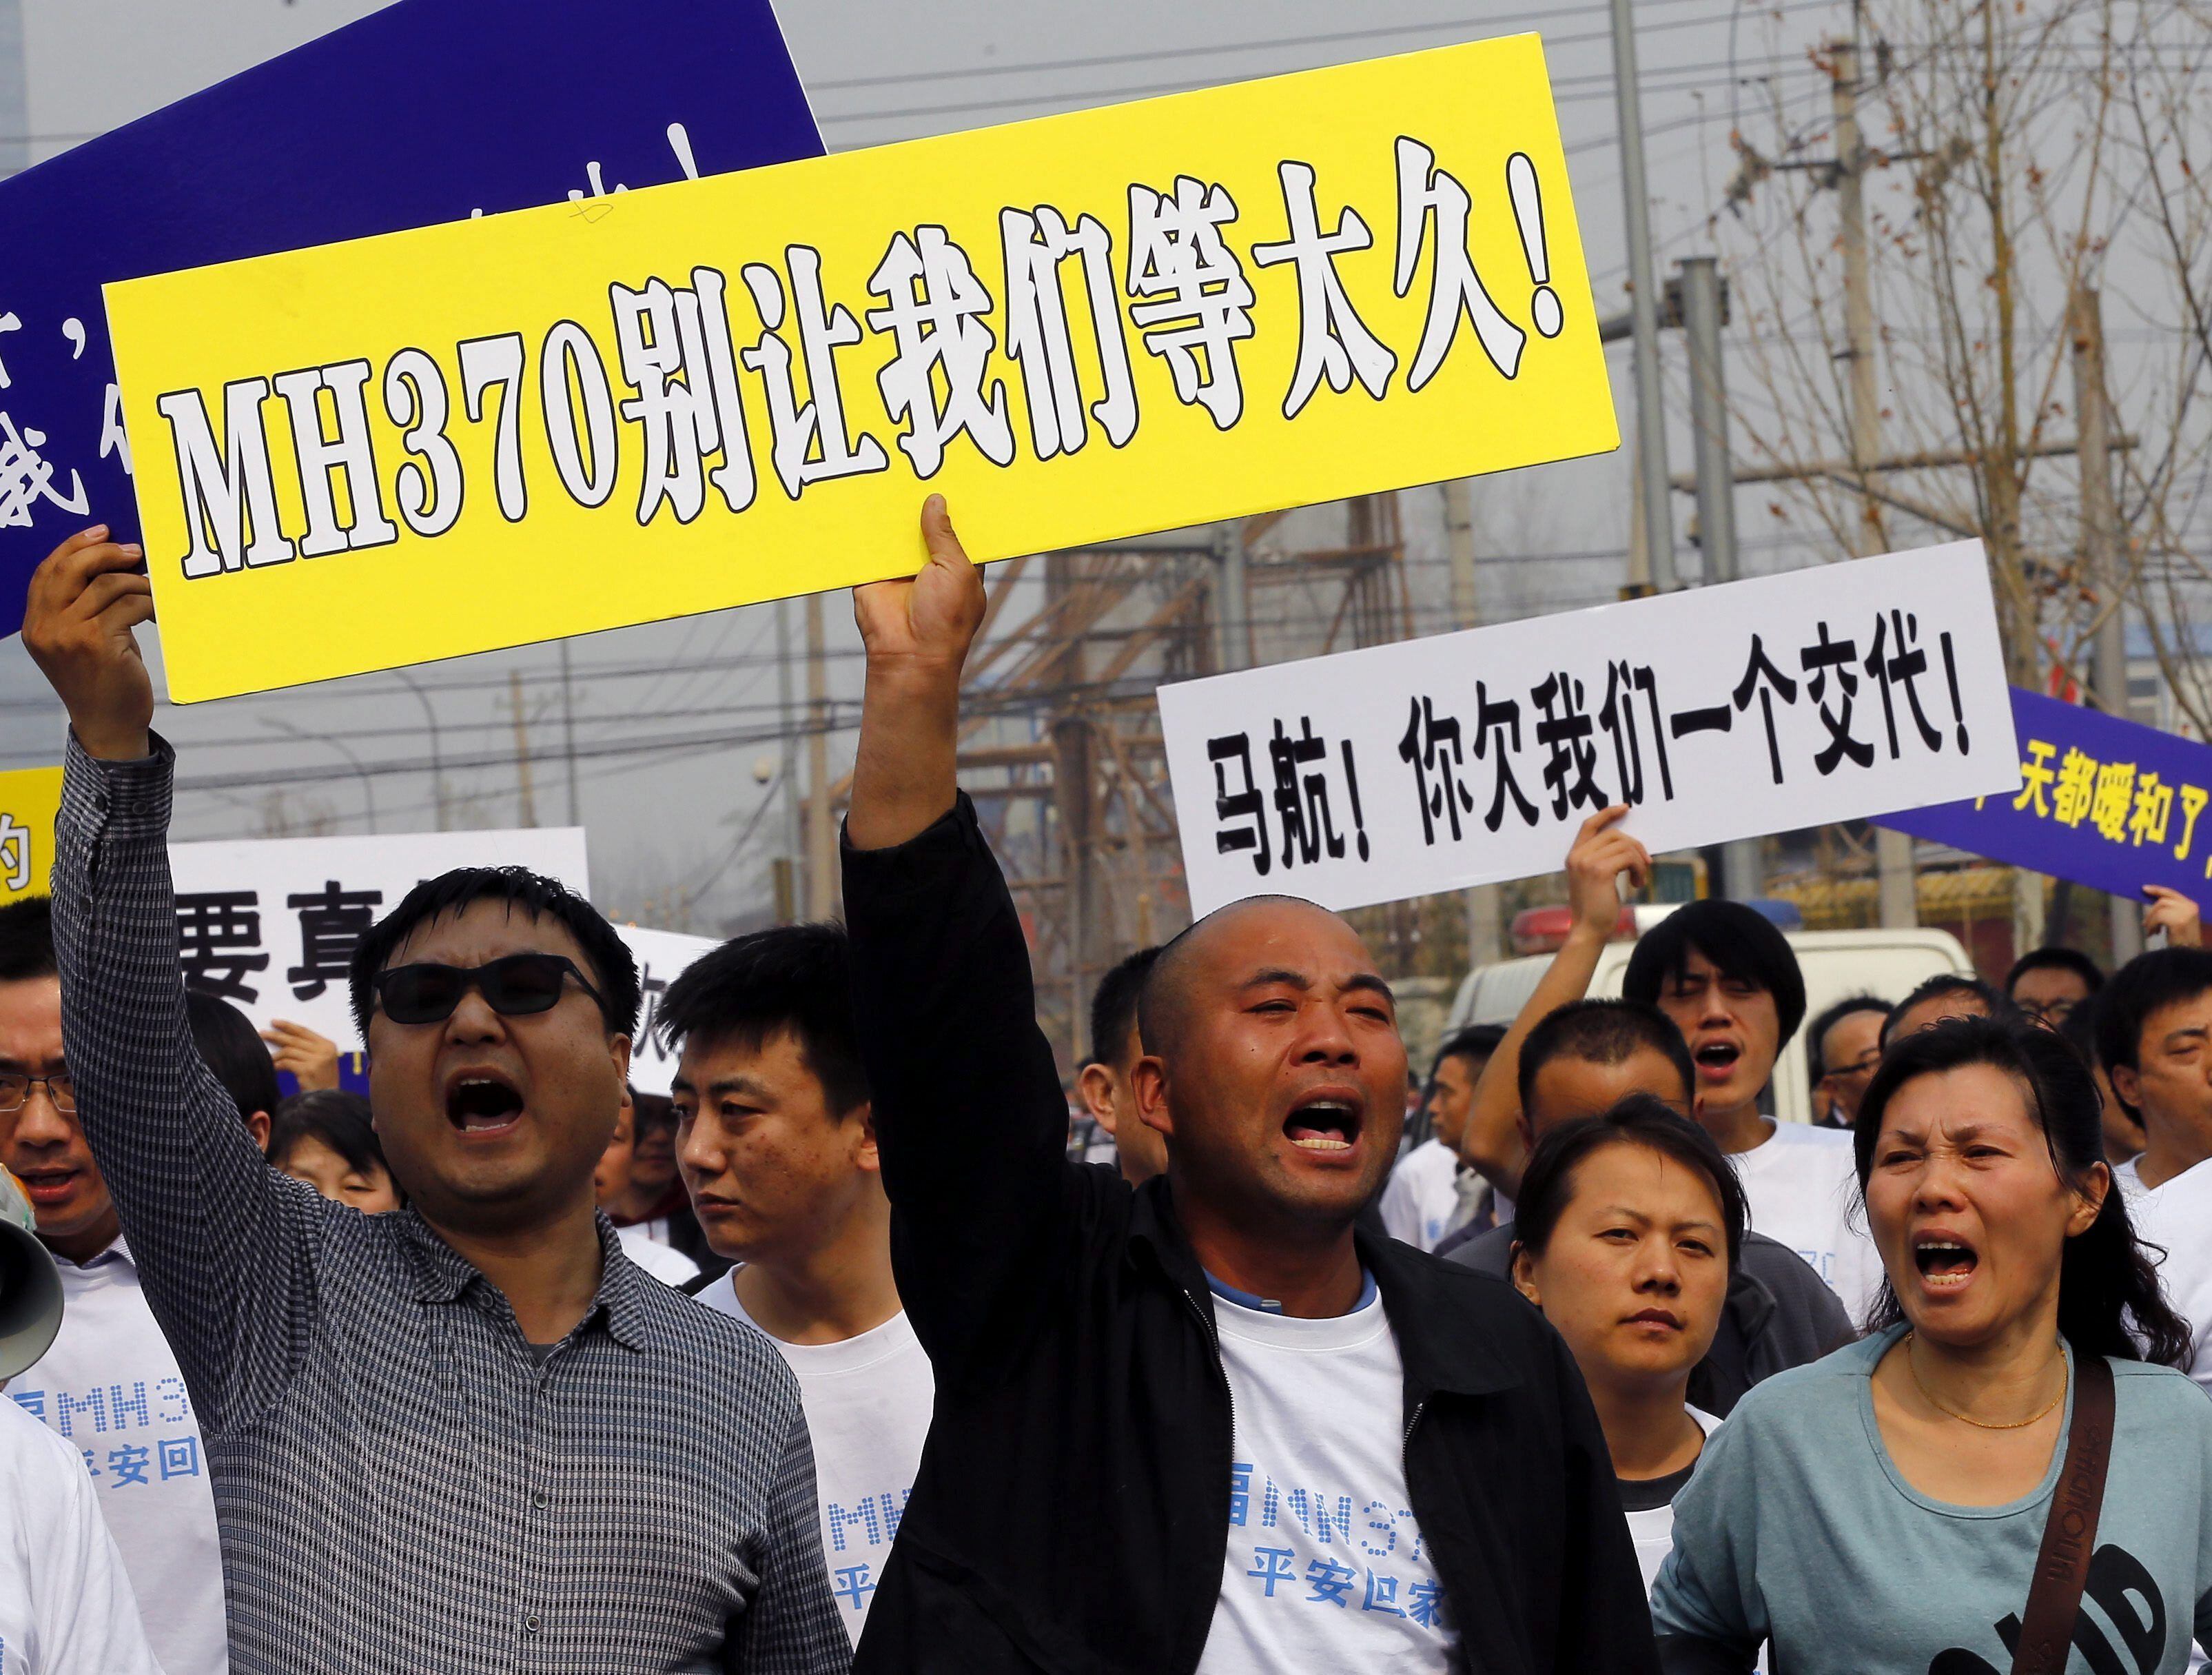 Las familias de las víctimas del vuelo MH370 de Malaysia Airlines han tomado todas las vías para ser escuchadas en su clamor por respuestas. Esta foto muestra una protesta realizada el 25 de marzo de 2014, la cual fue bloqueada por la policía china en su intento de alcanzar la embajada de Malasia en Pekín. Foto: EFE/Rolex Dela Pena.